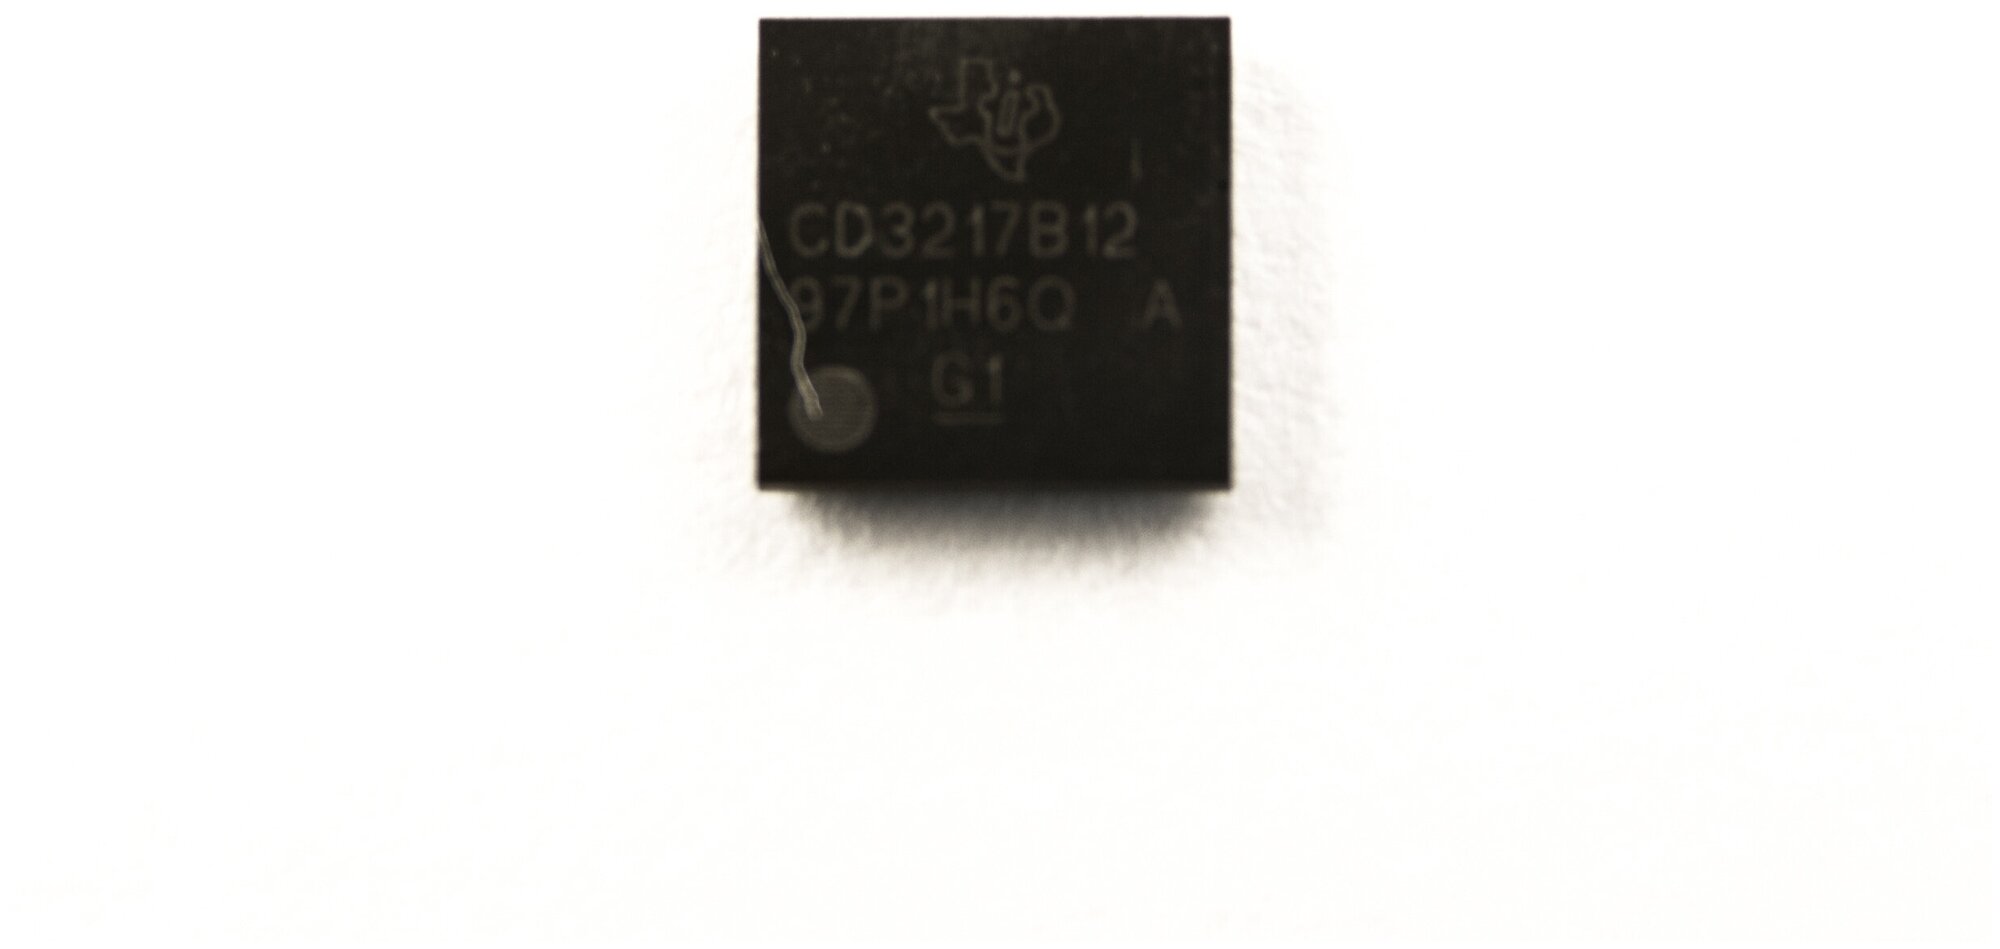 Микросхема CD3217B12